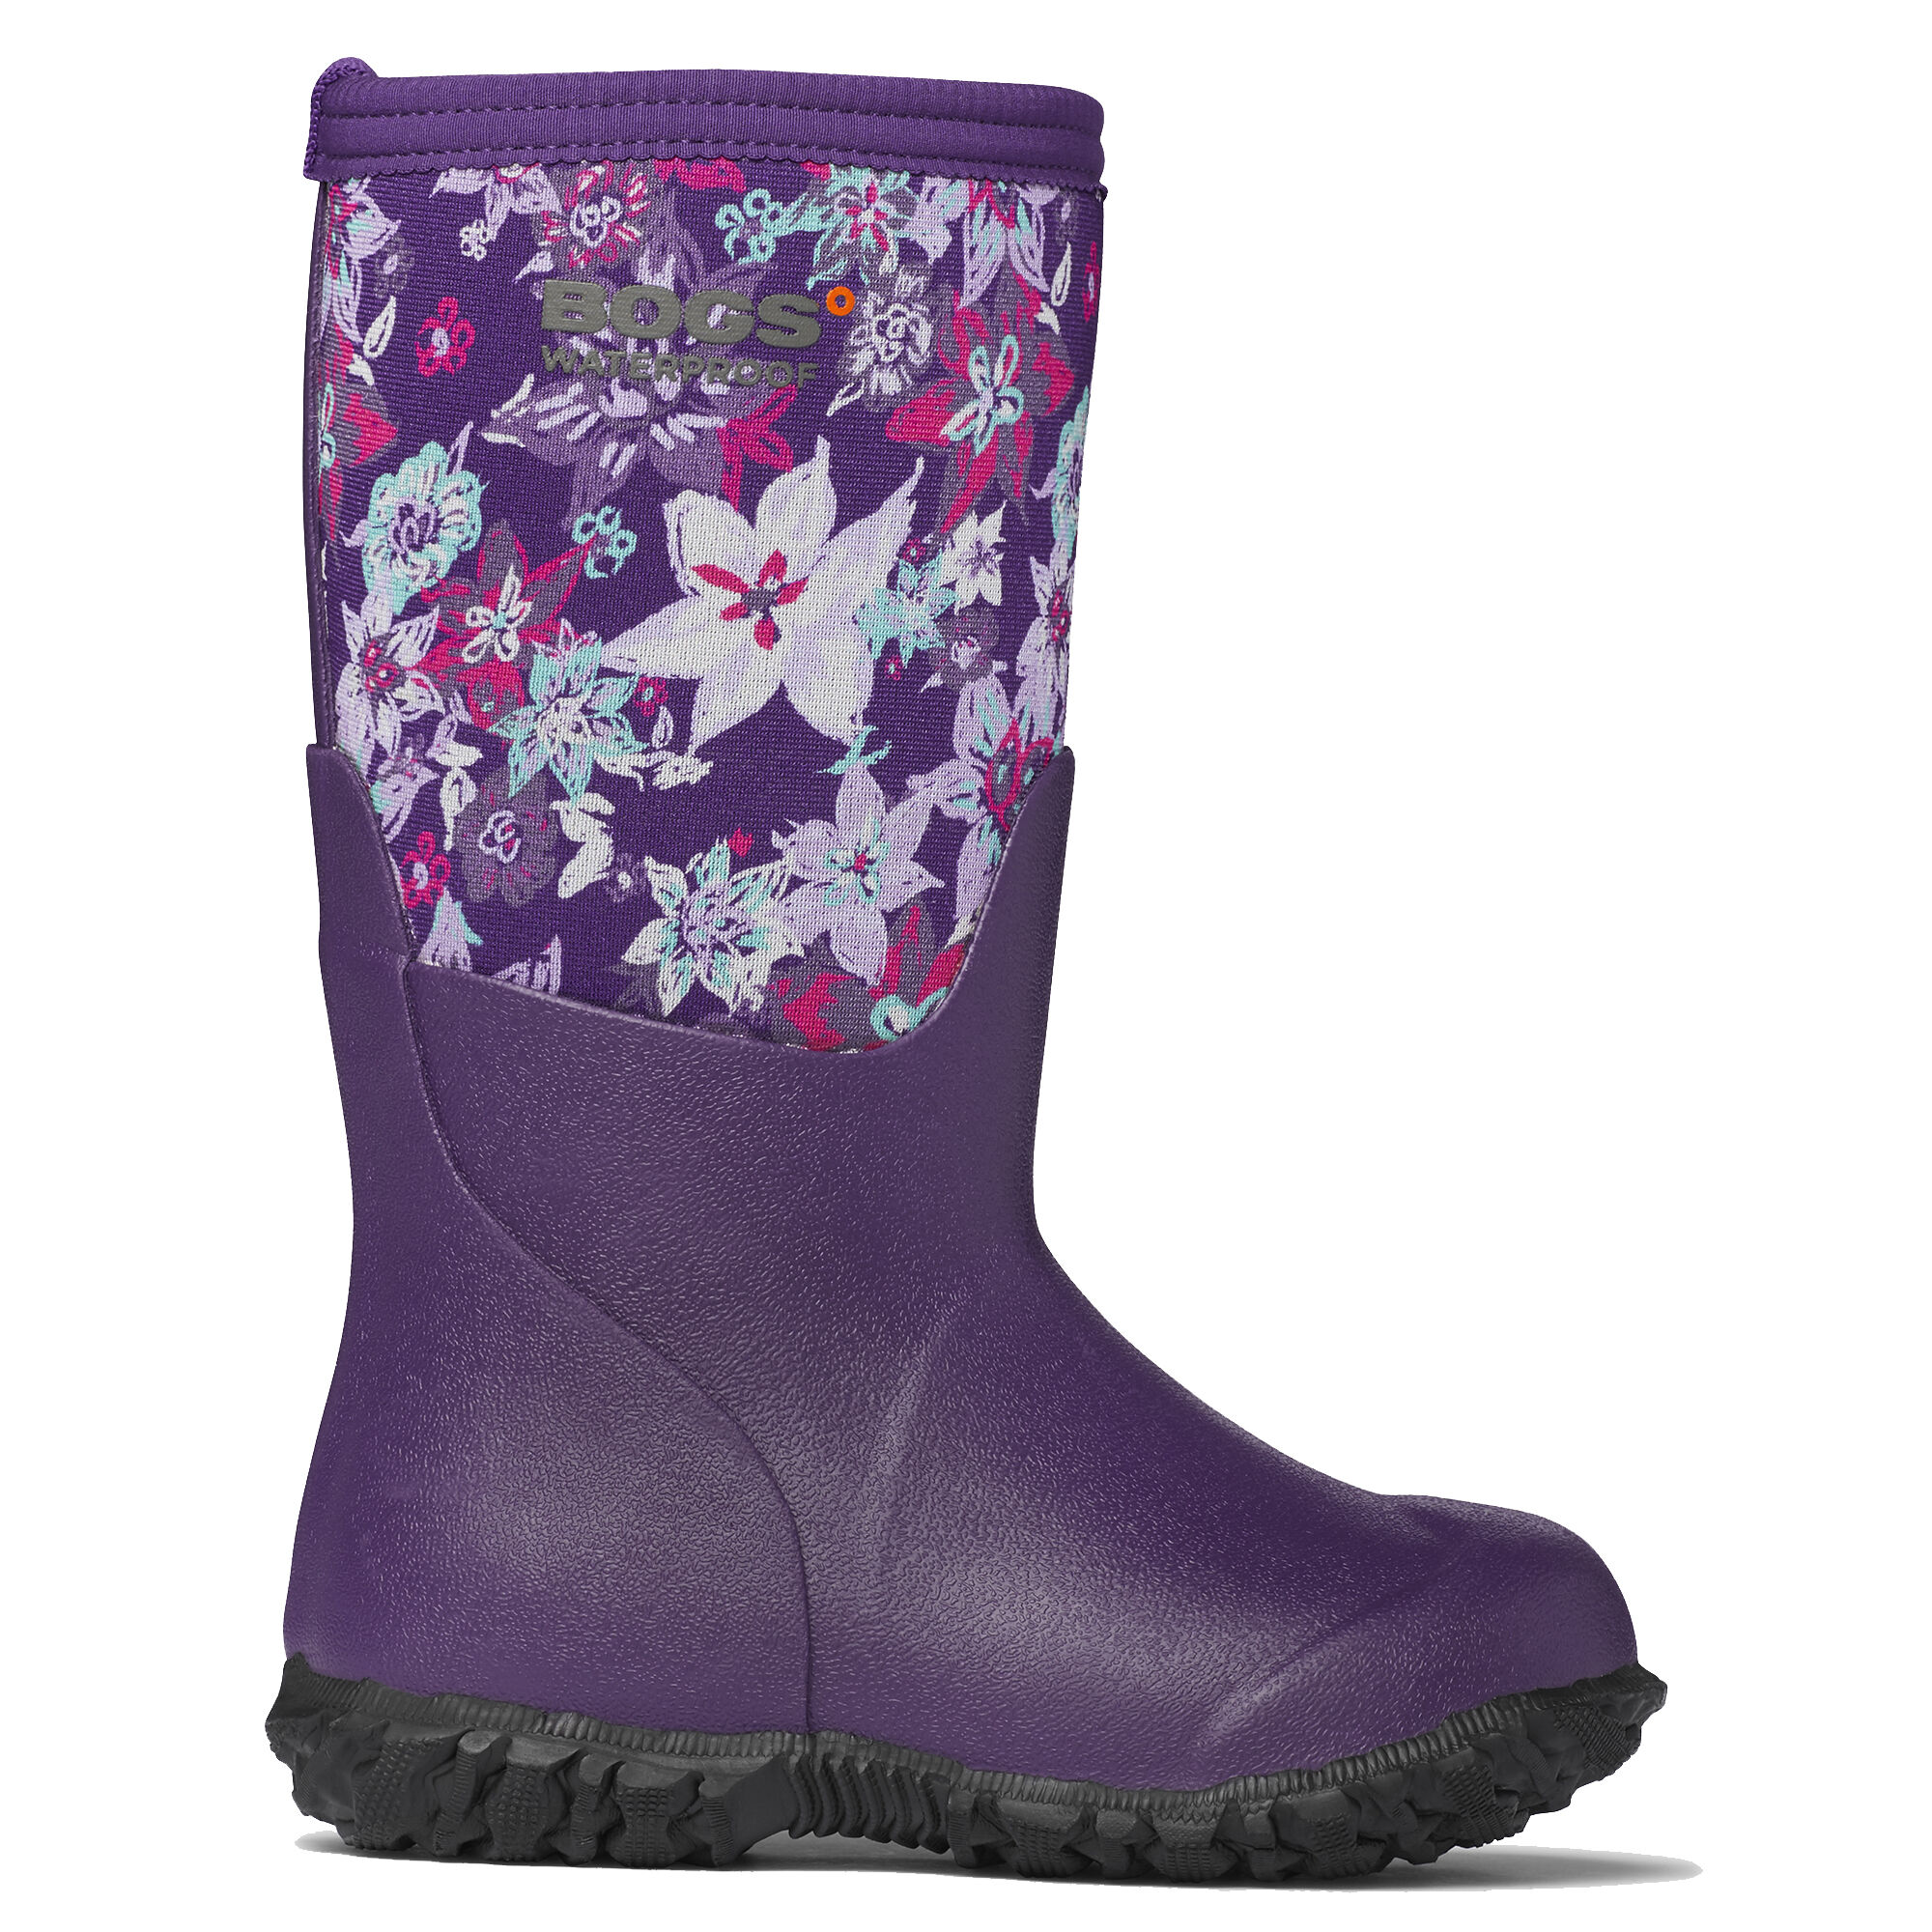 bogs girls rain boots